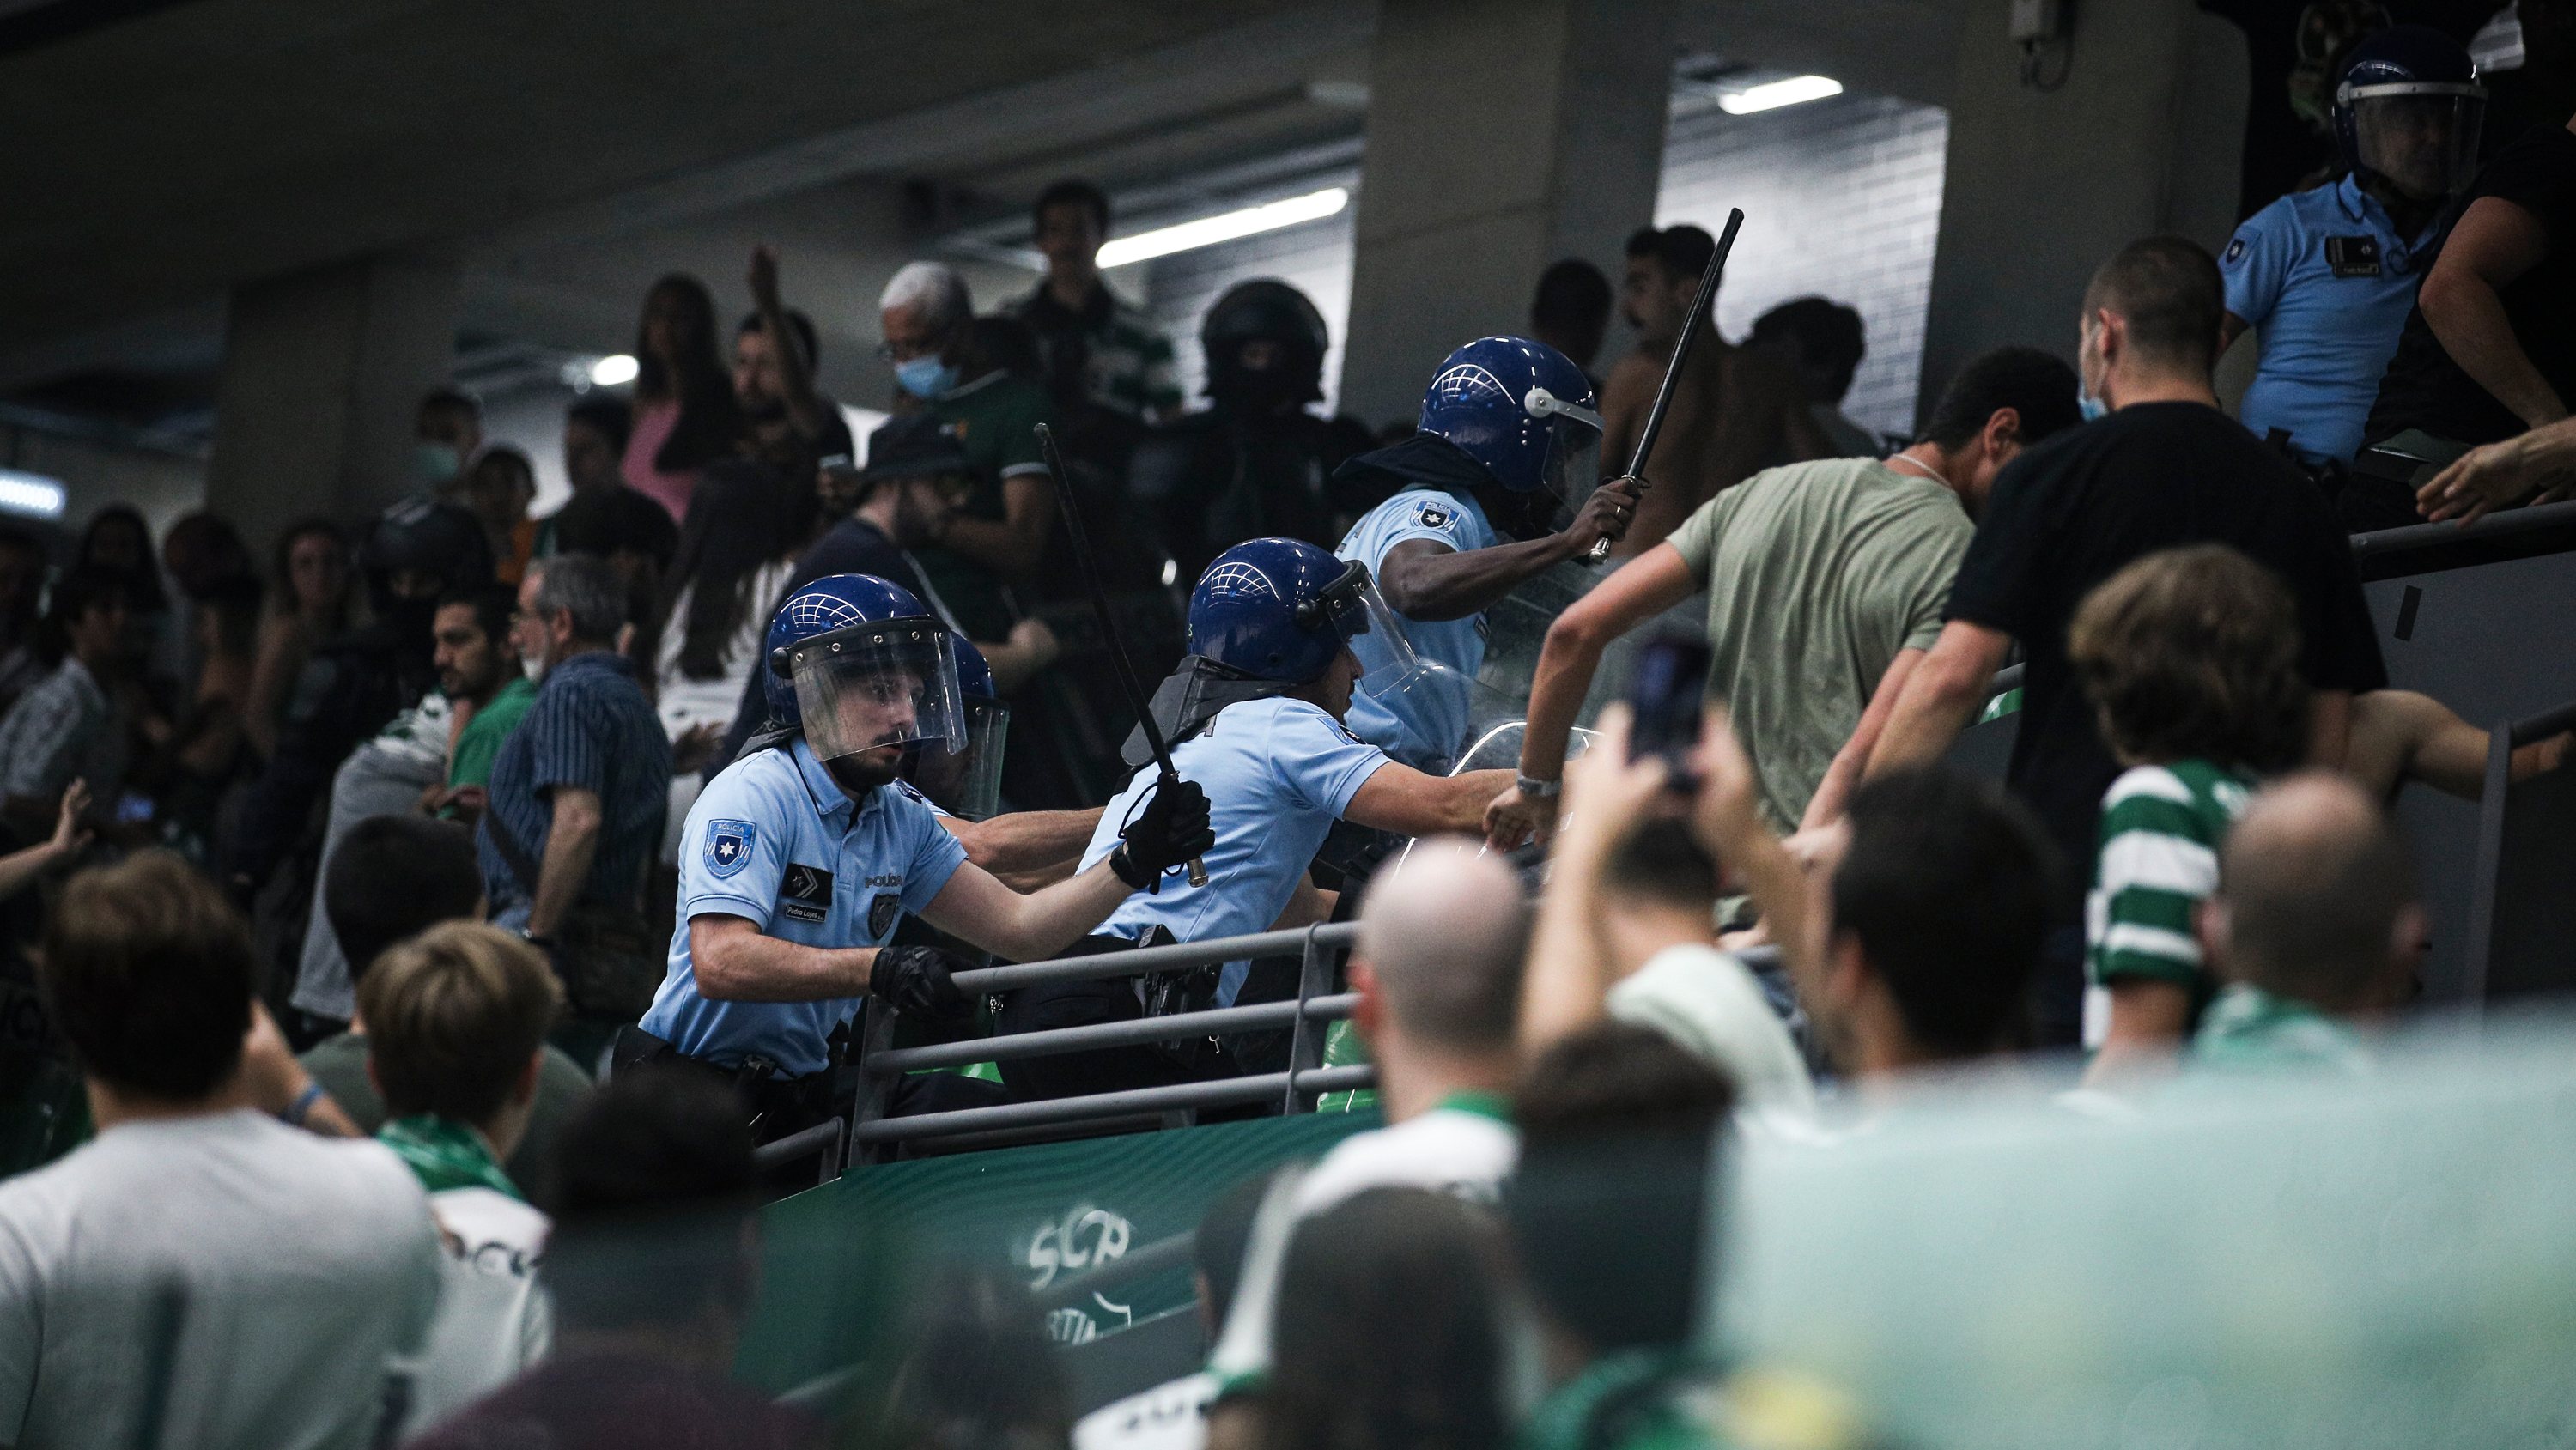 Dérbi de hóquei em patins entre Sporting e Benfica no passado domingo foi marcado por várias intervenções policiais